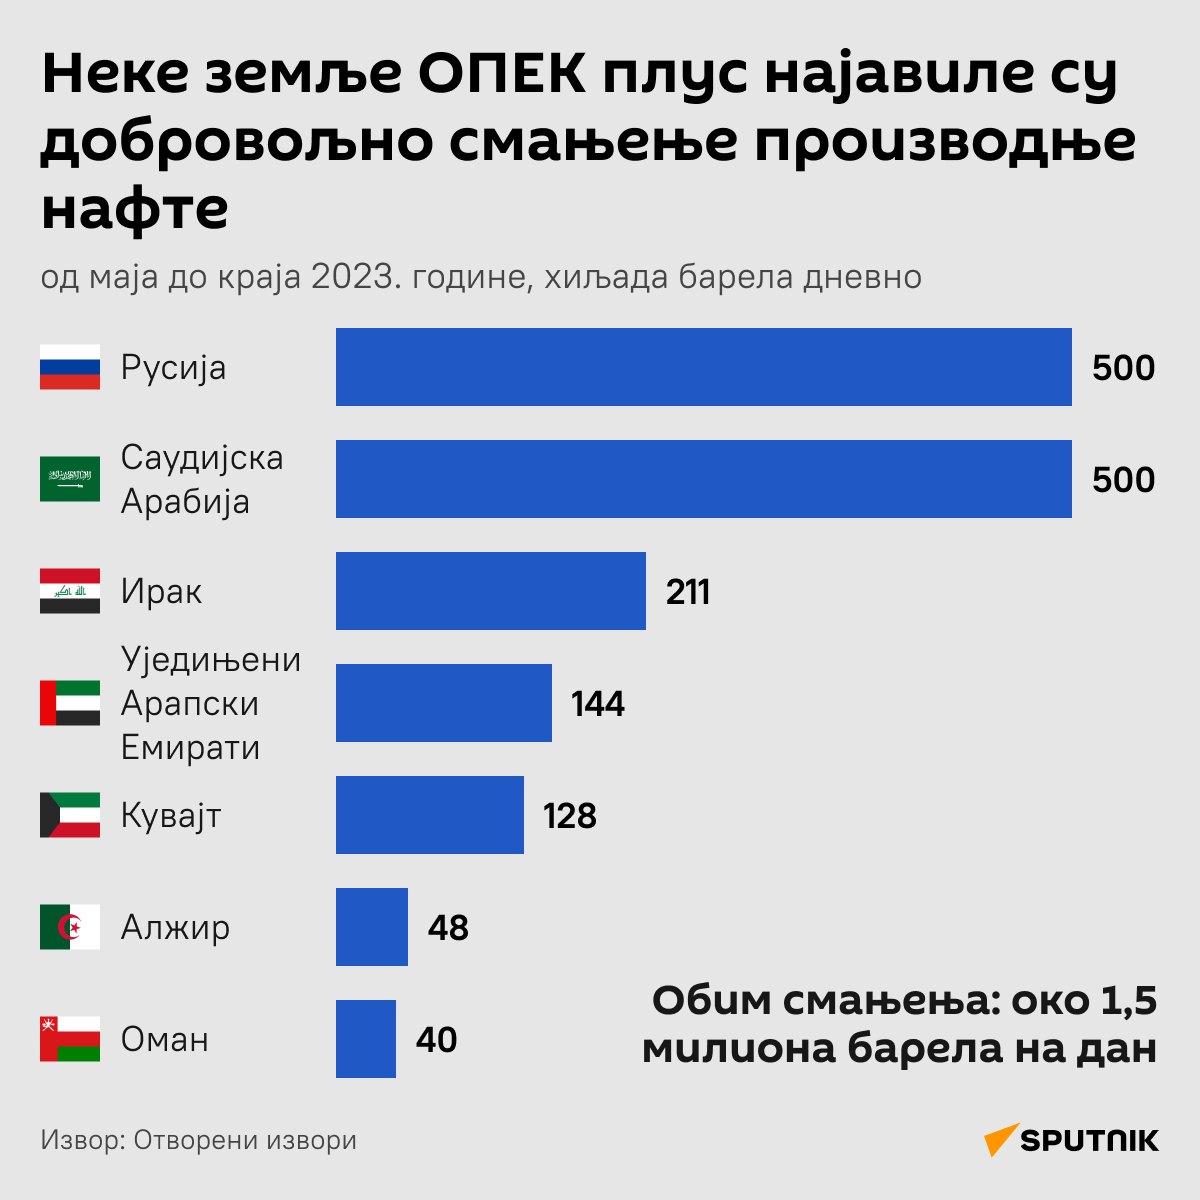 Zemlje OPEK plus najavile smanjenje proizvodnje nafte LATINICA desk - Sputnik Srbija